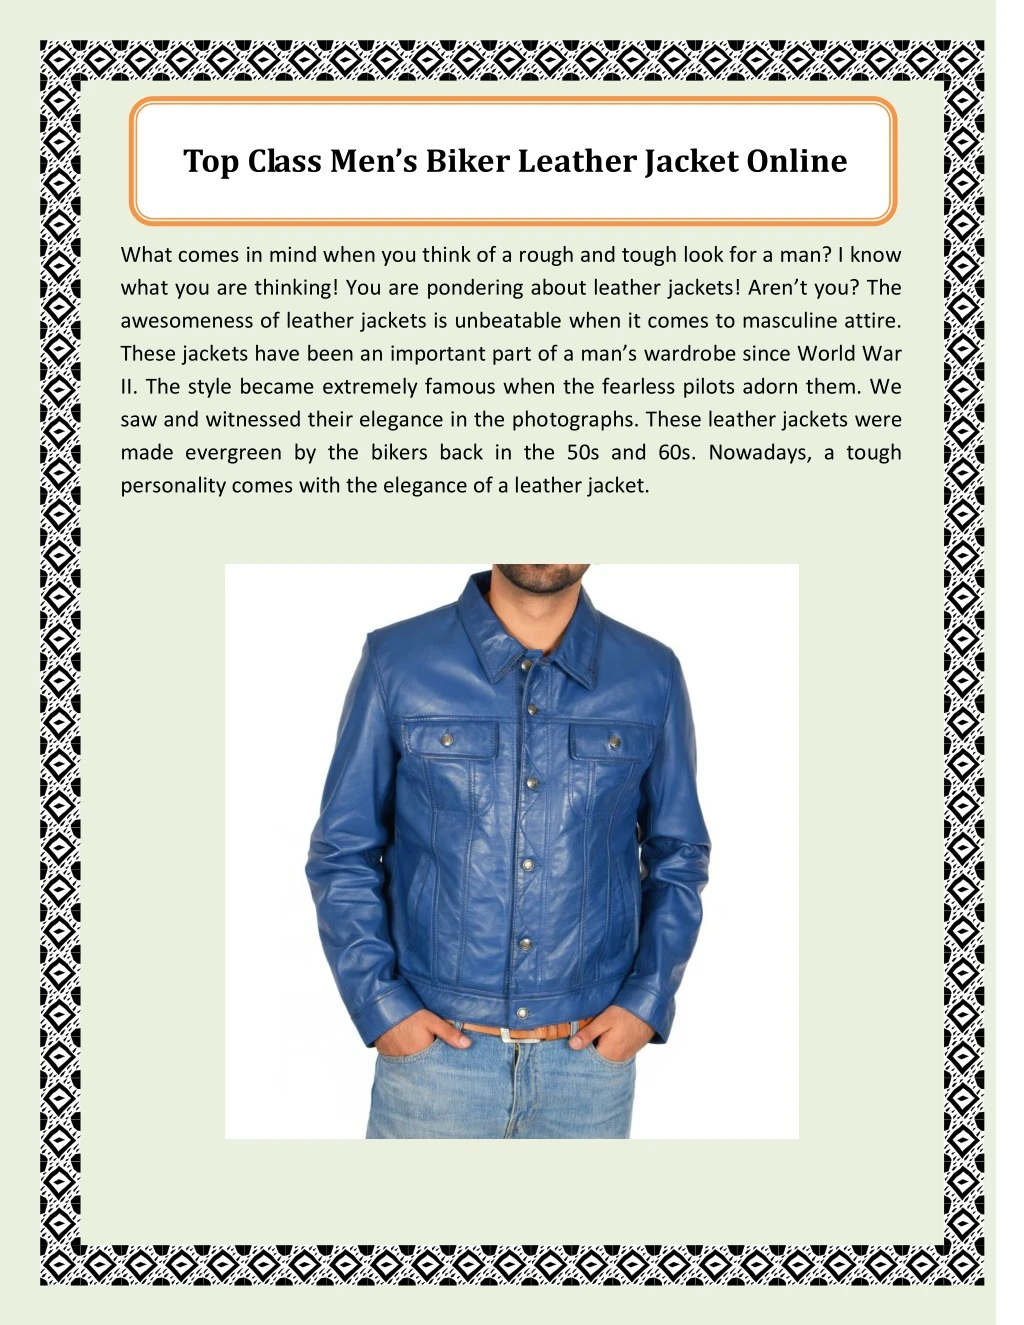 top class men s biker leather jacket onl ine